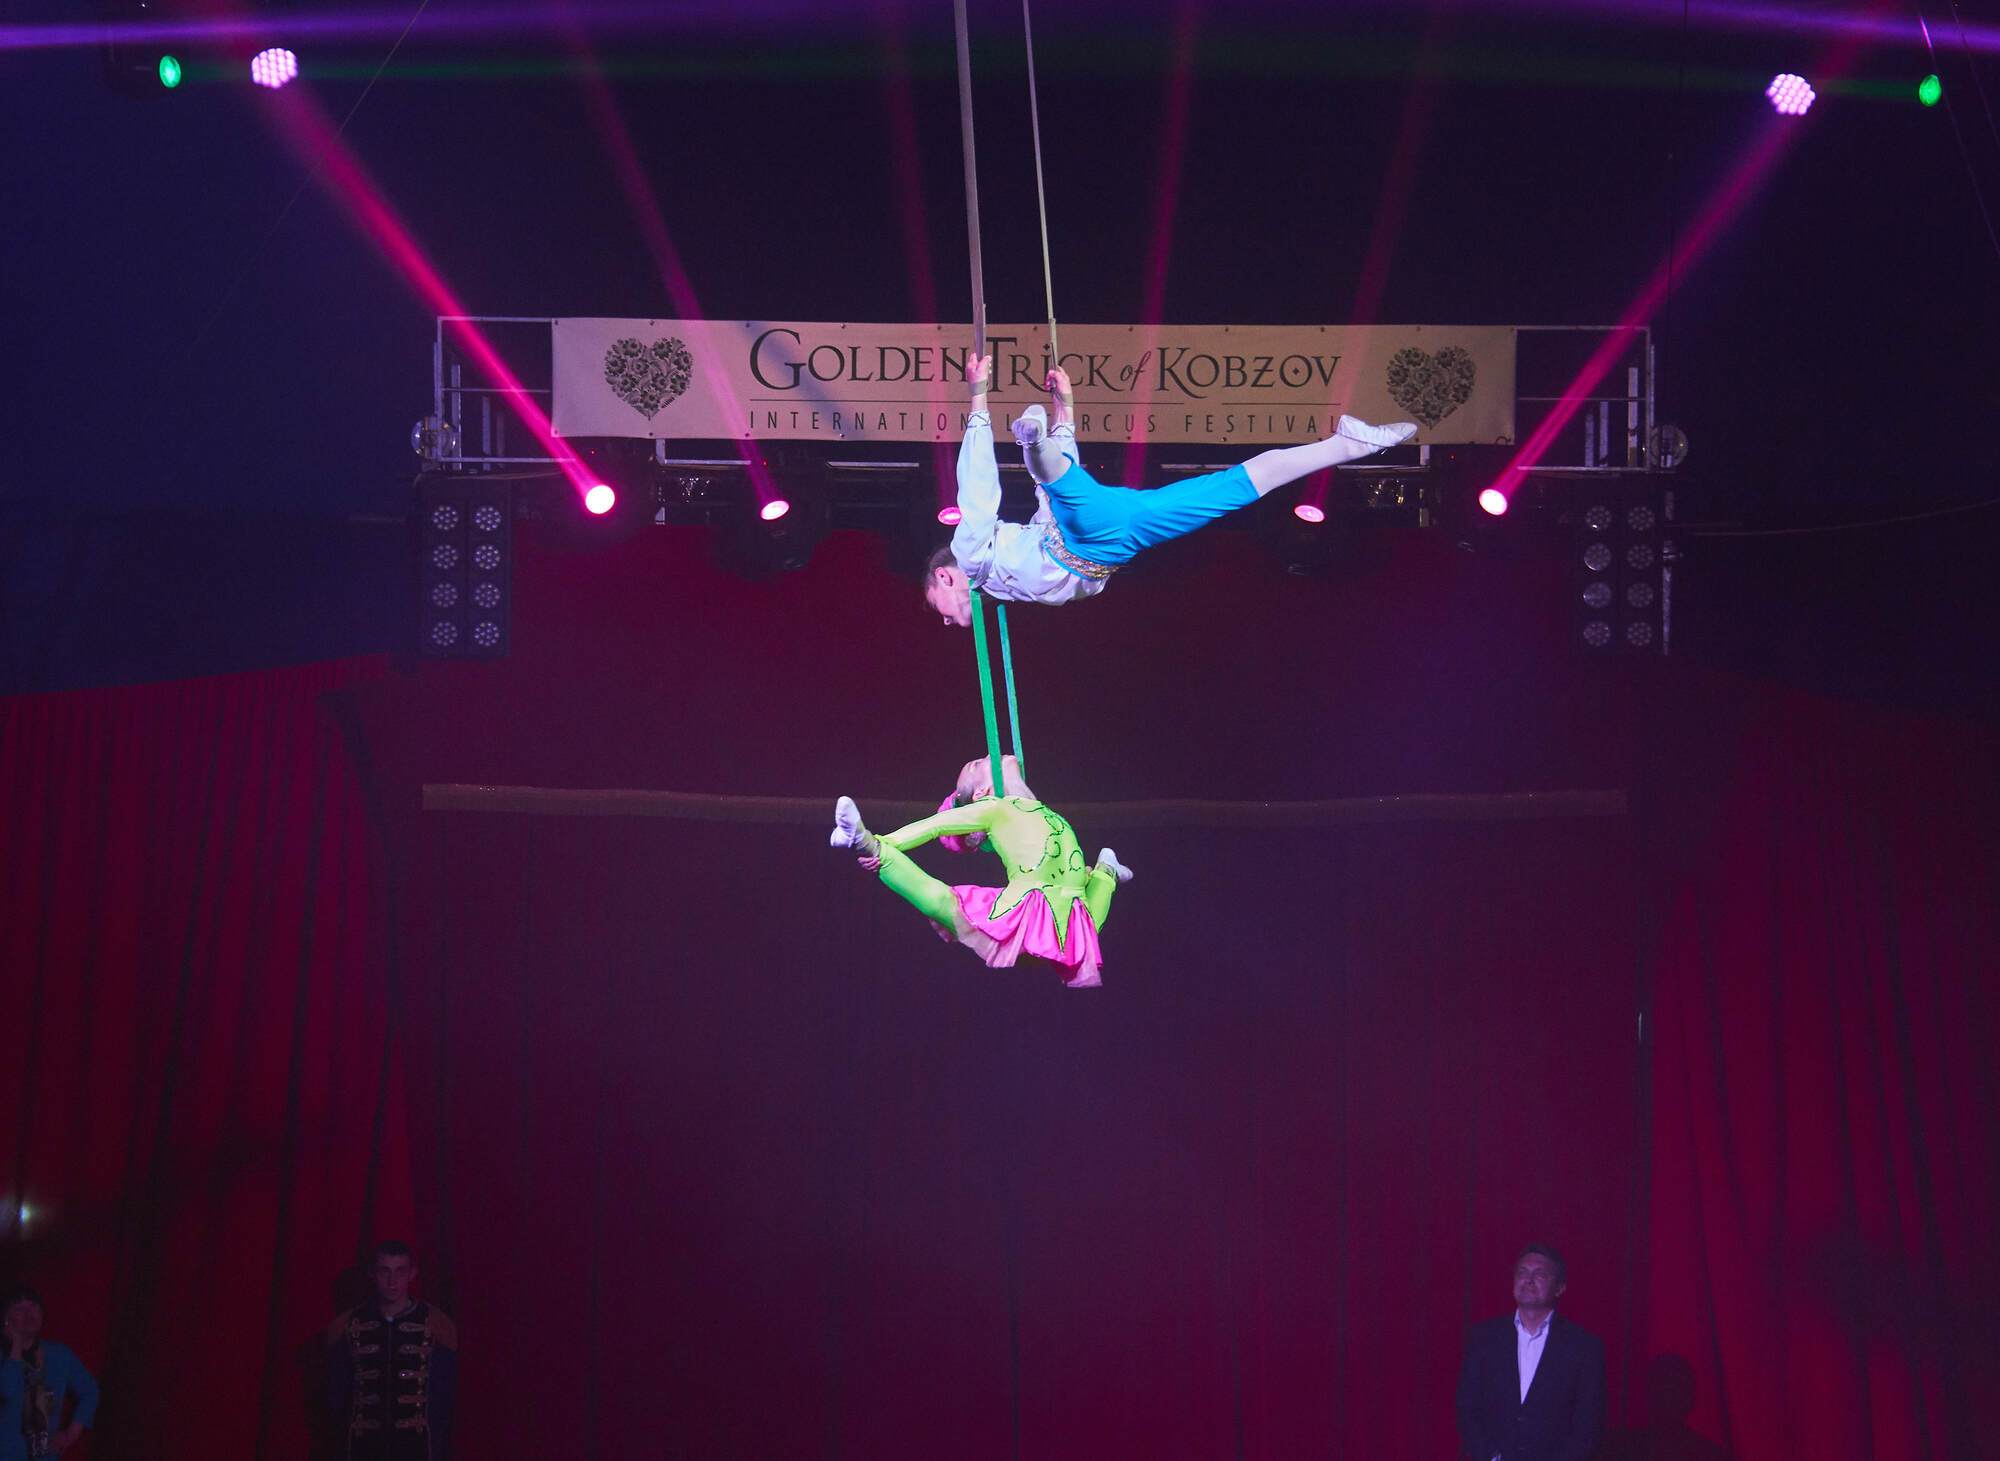 Звёзды циркового фестиваля "Золотой Трюк Кобзова" зажглись в Одессе